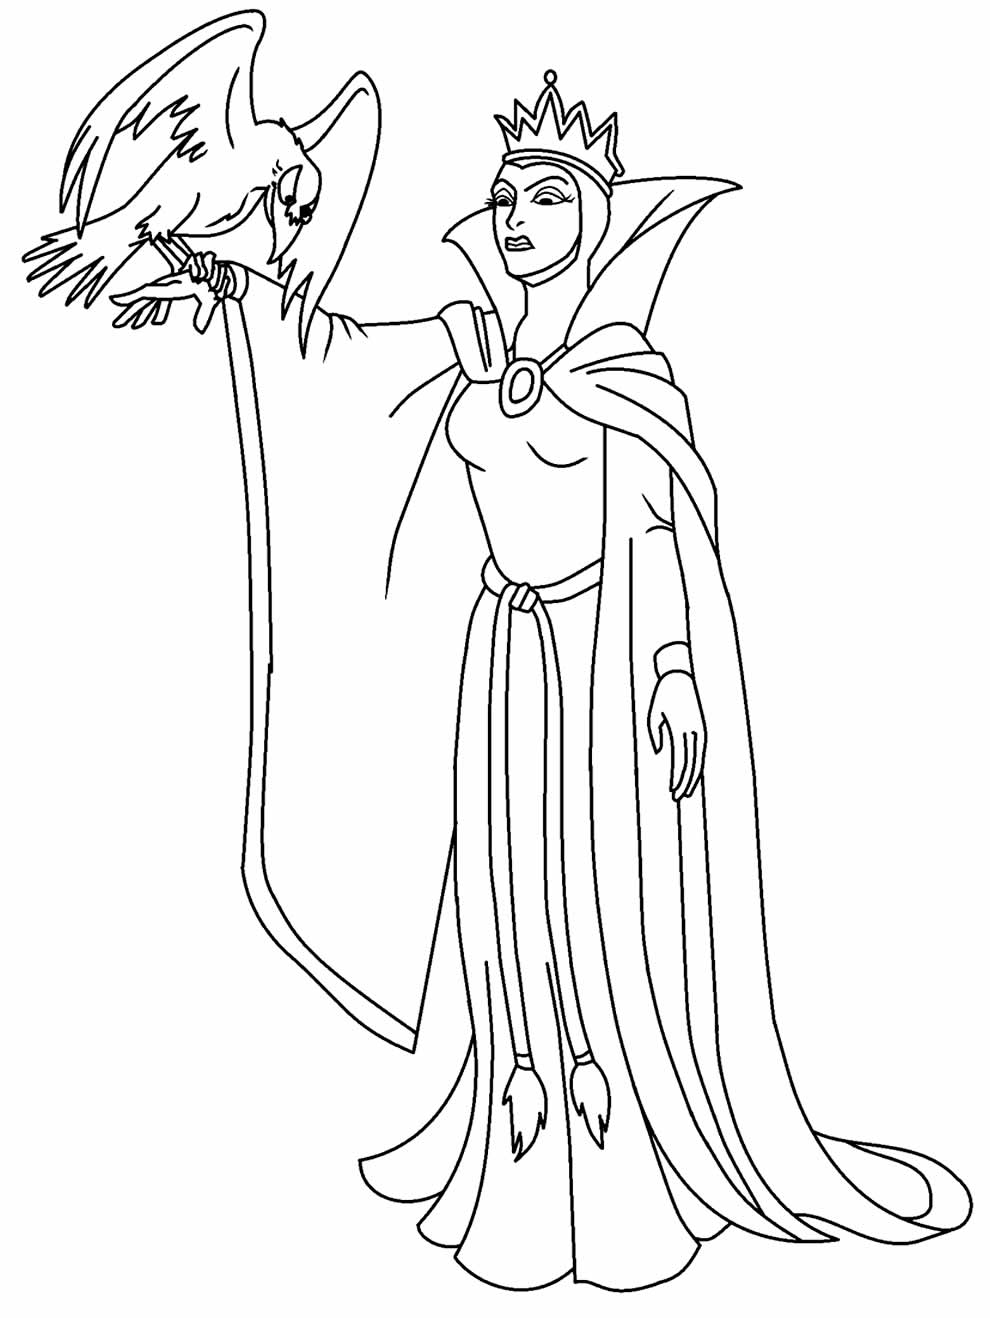 Desenho da Bruxa da Branca de Neve